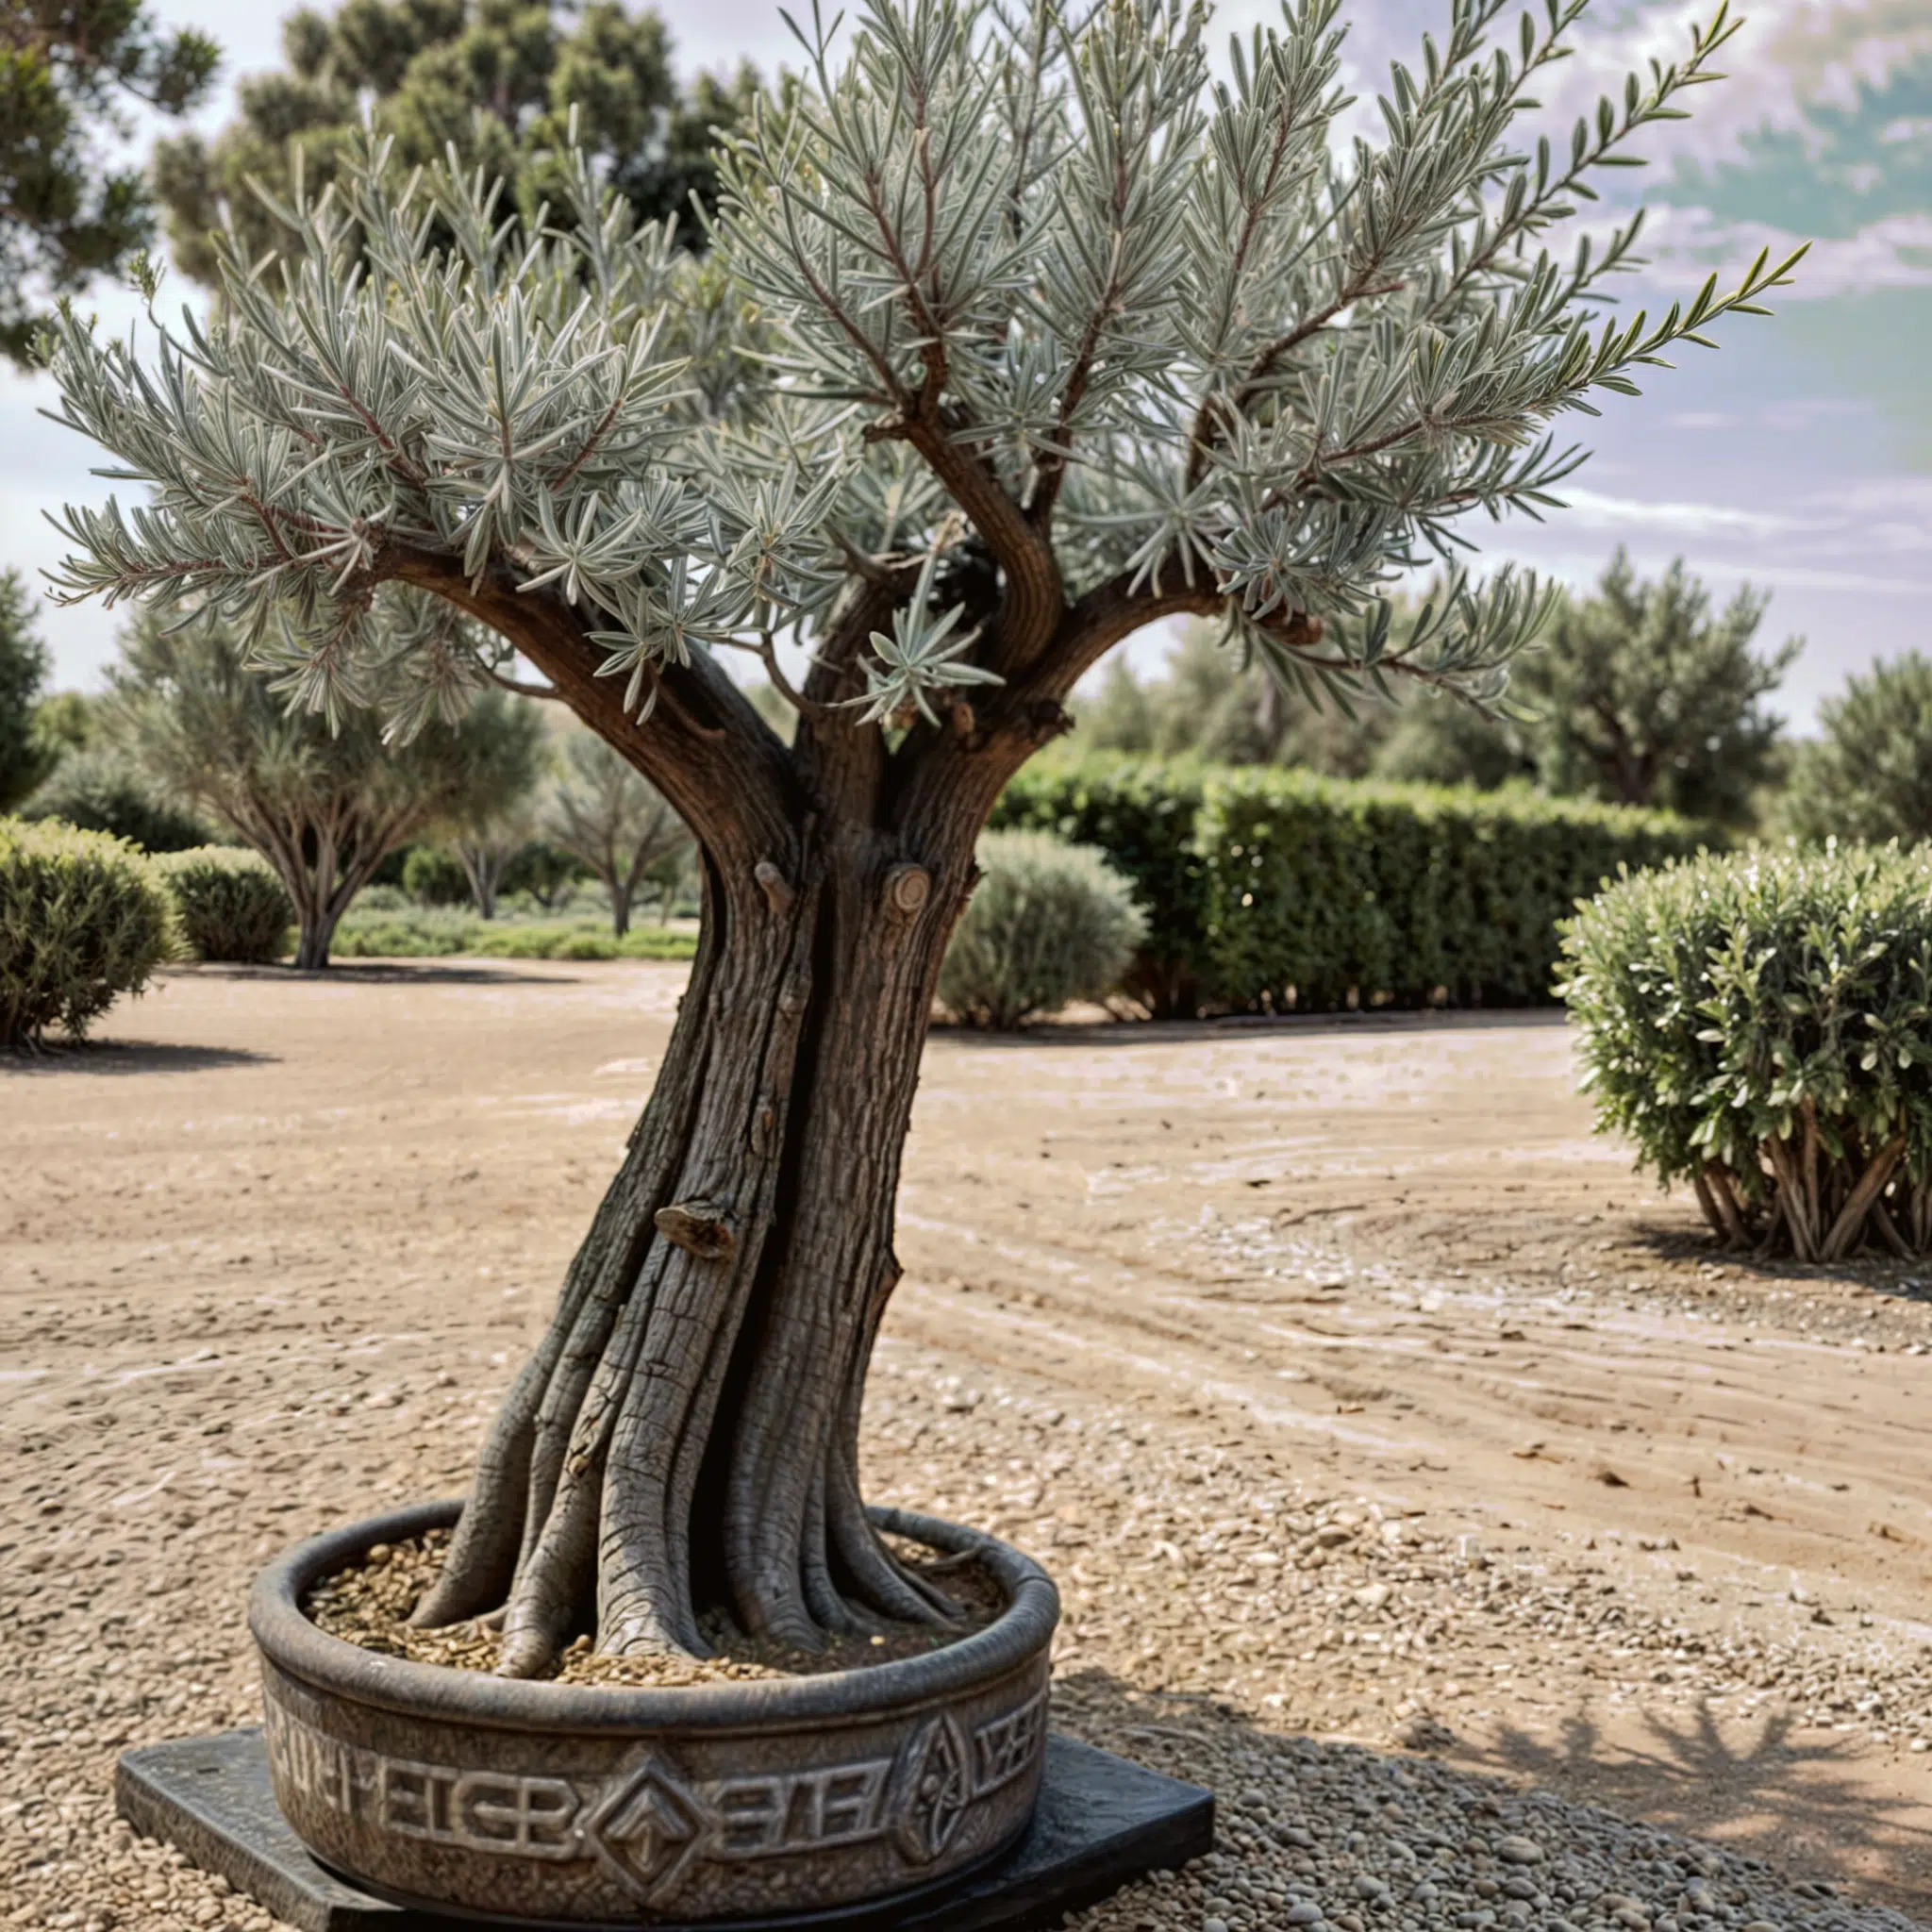 Olivo en maceta de diseño ornamental situado en un jardín amplio, mostrando un tronco robusto y múltiples ramas con follaje denso de tono plateado